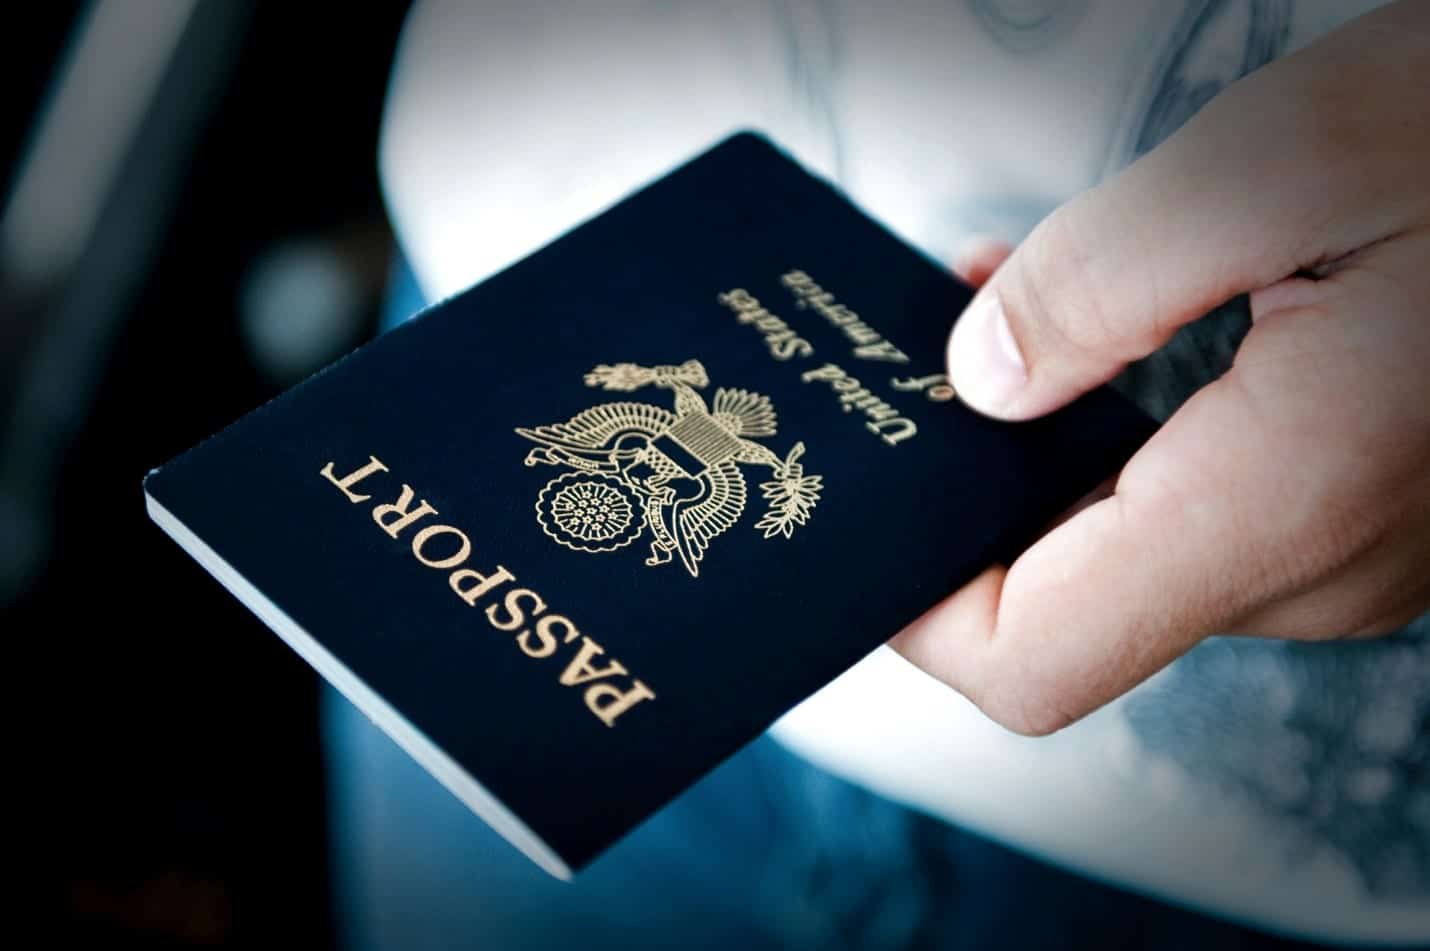 Sex Offender Passport Marker Law Being Challenged